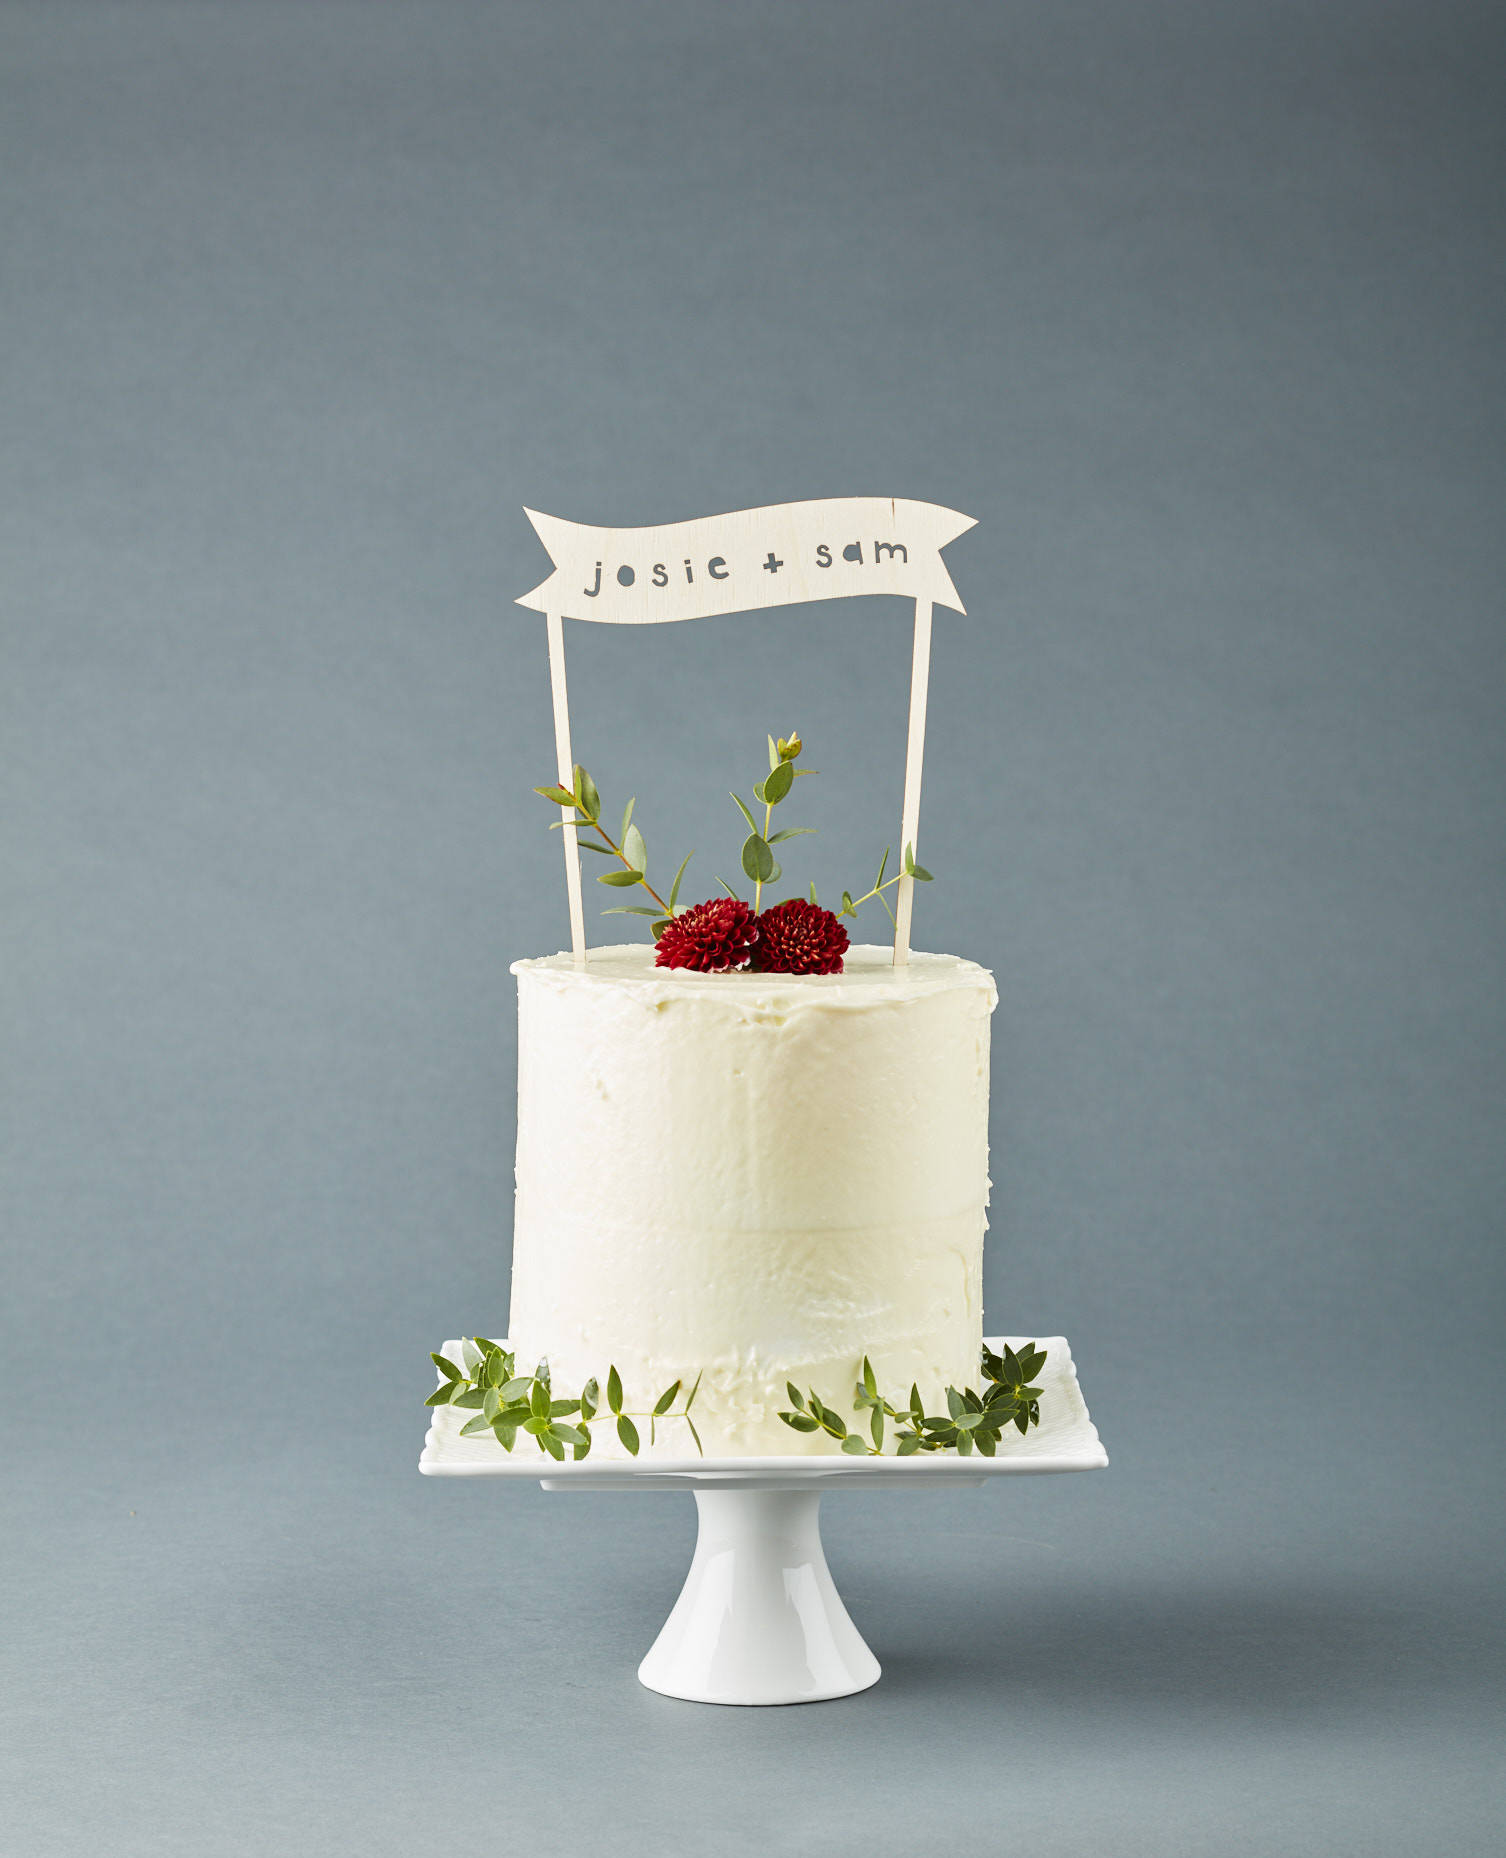 Topper de gâteau de mariage acrylique personnalisé Arche Bohème 4 1/2H x 4W  5 1/2H avec pics à gâteau Minimaliste Classique Tendance Élégant -   France